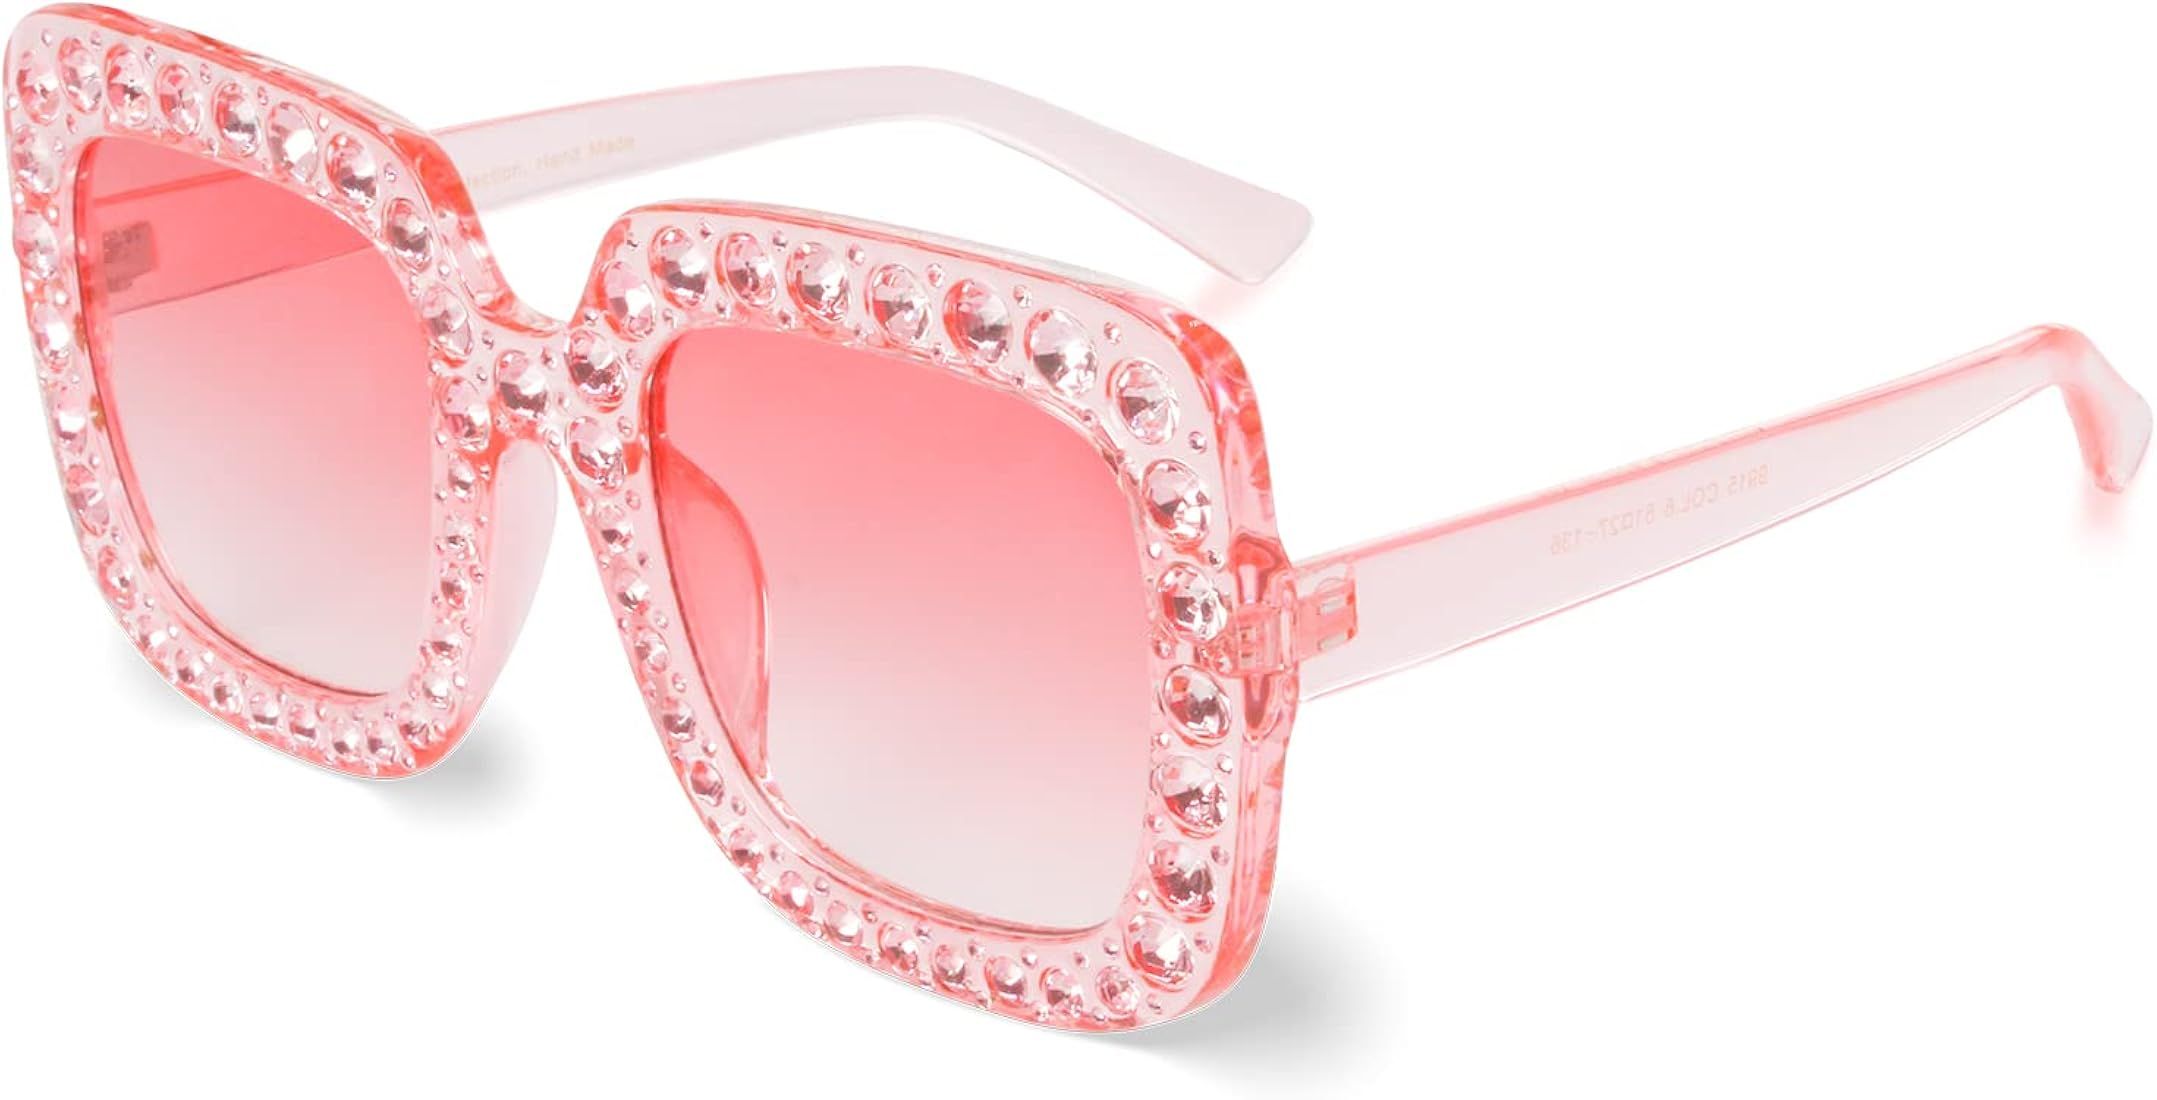 Xpectrum Extra Large Squared Elton Crystal Sunglasses Bling Rhinestone Concert Glasses | Amazon (US)